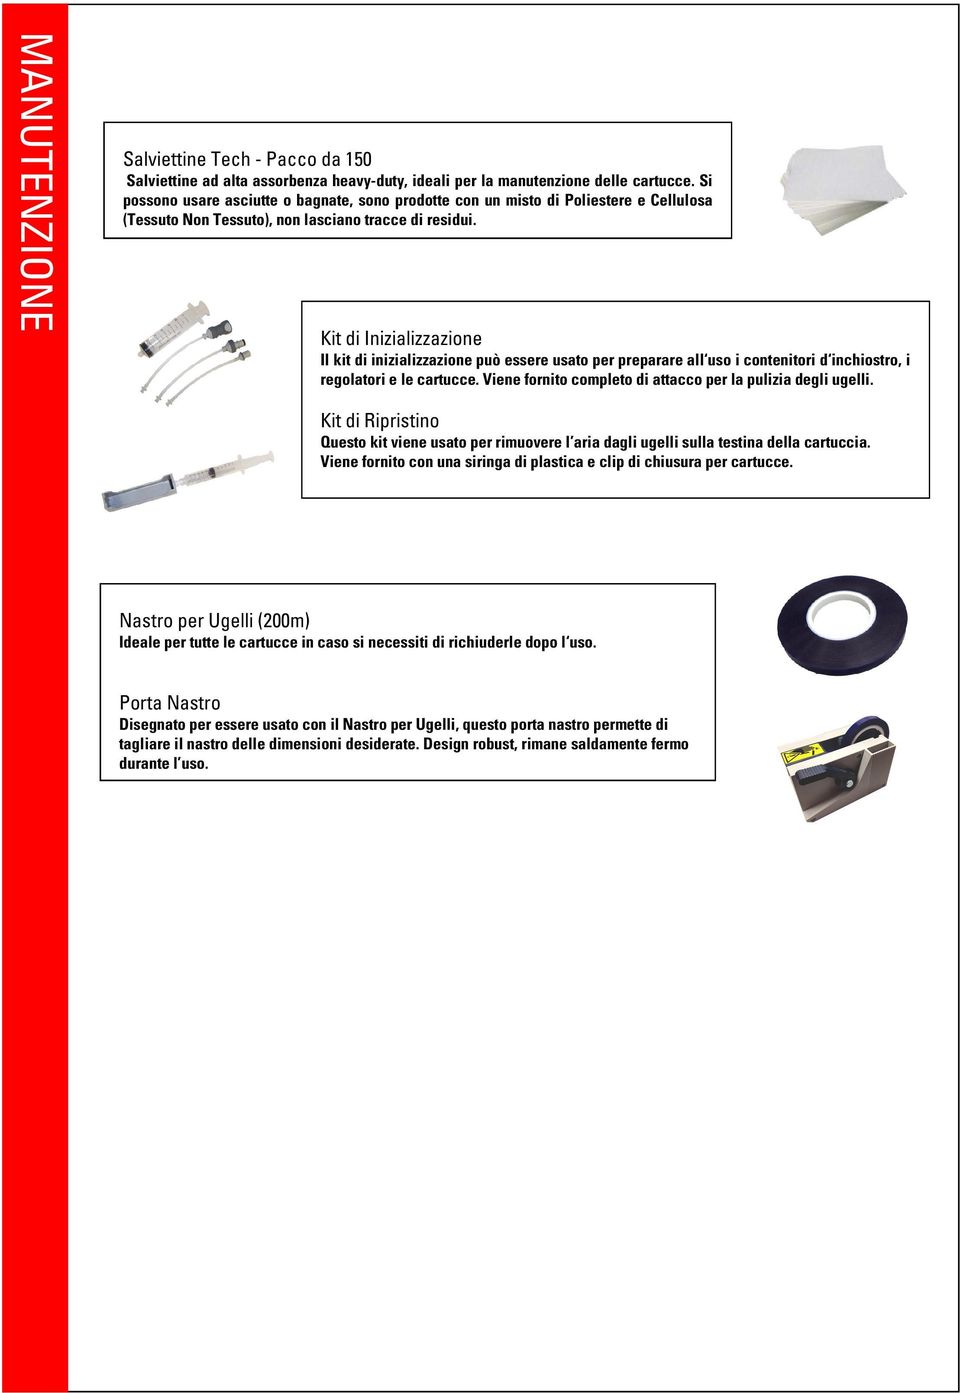 Kit di Inizializzazione Il kit di inizializzazione può essere usato per preparare all uso i contenitori d inchiostro, i regolatori e le cartucce.